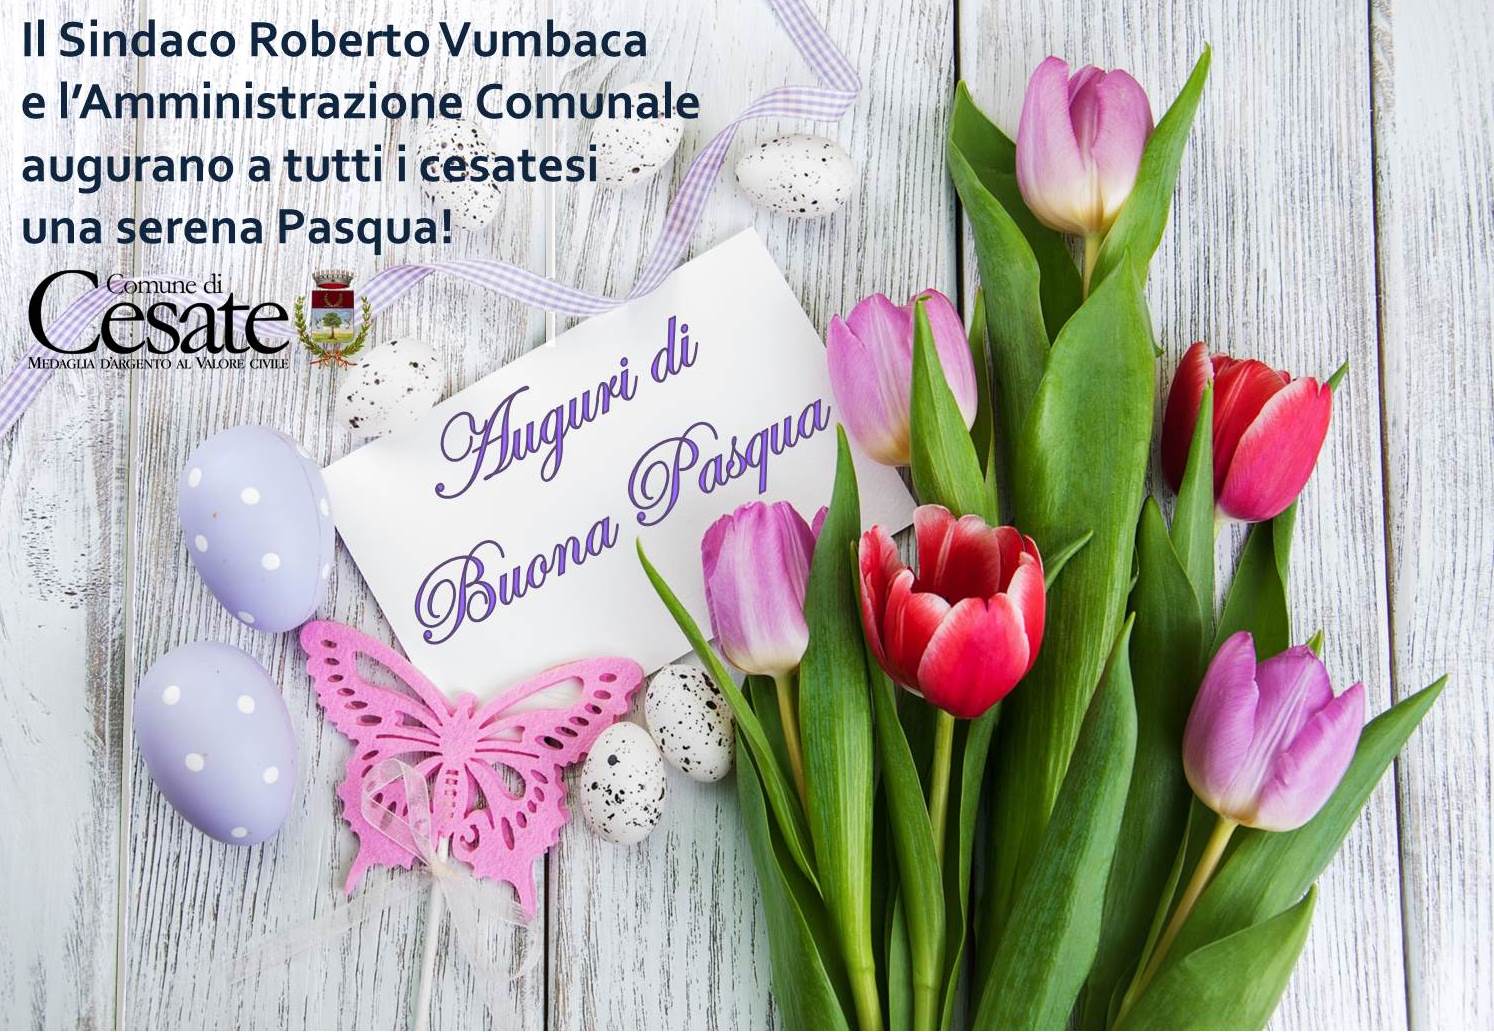 Gli auguri di Buona Pasqua del Sindaco Roberto Vumbaca